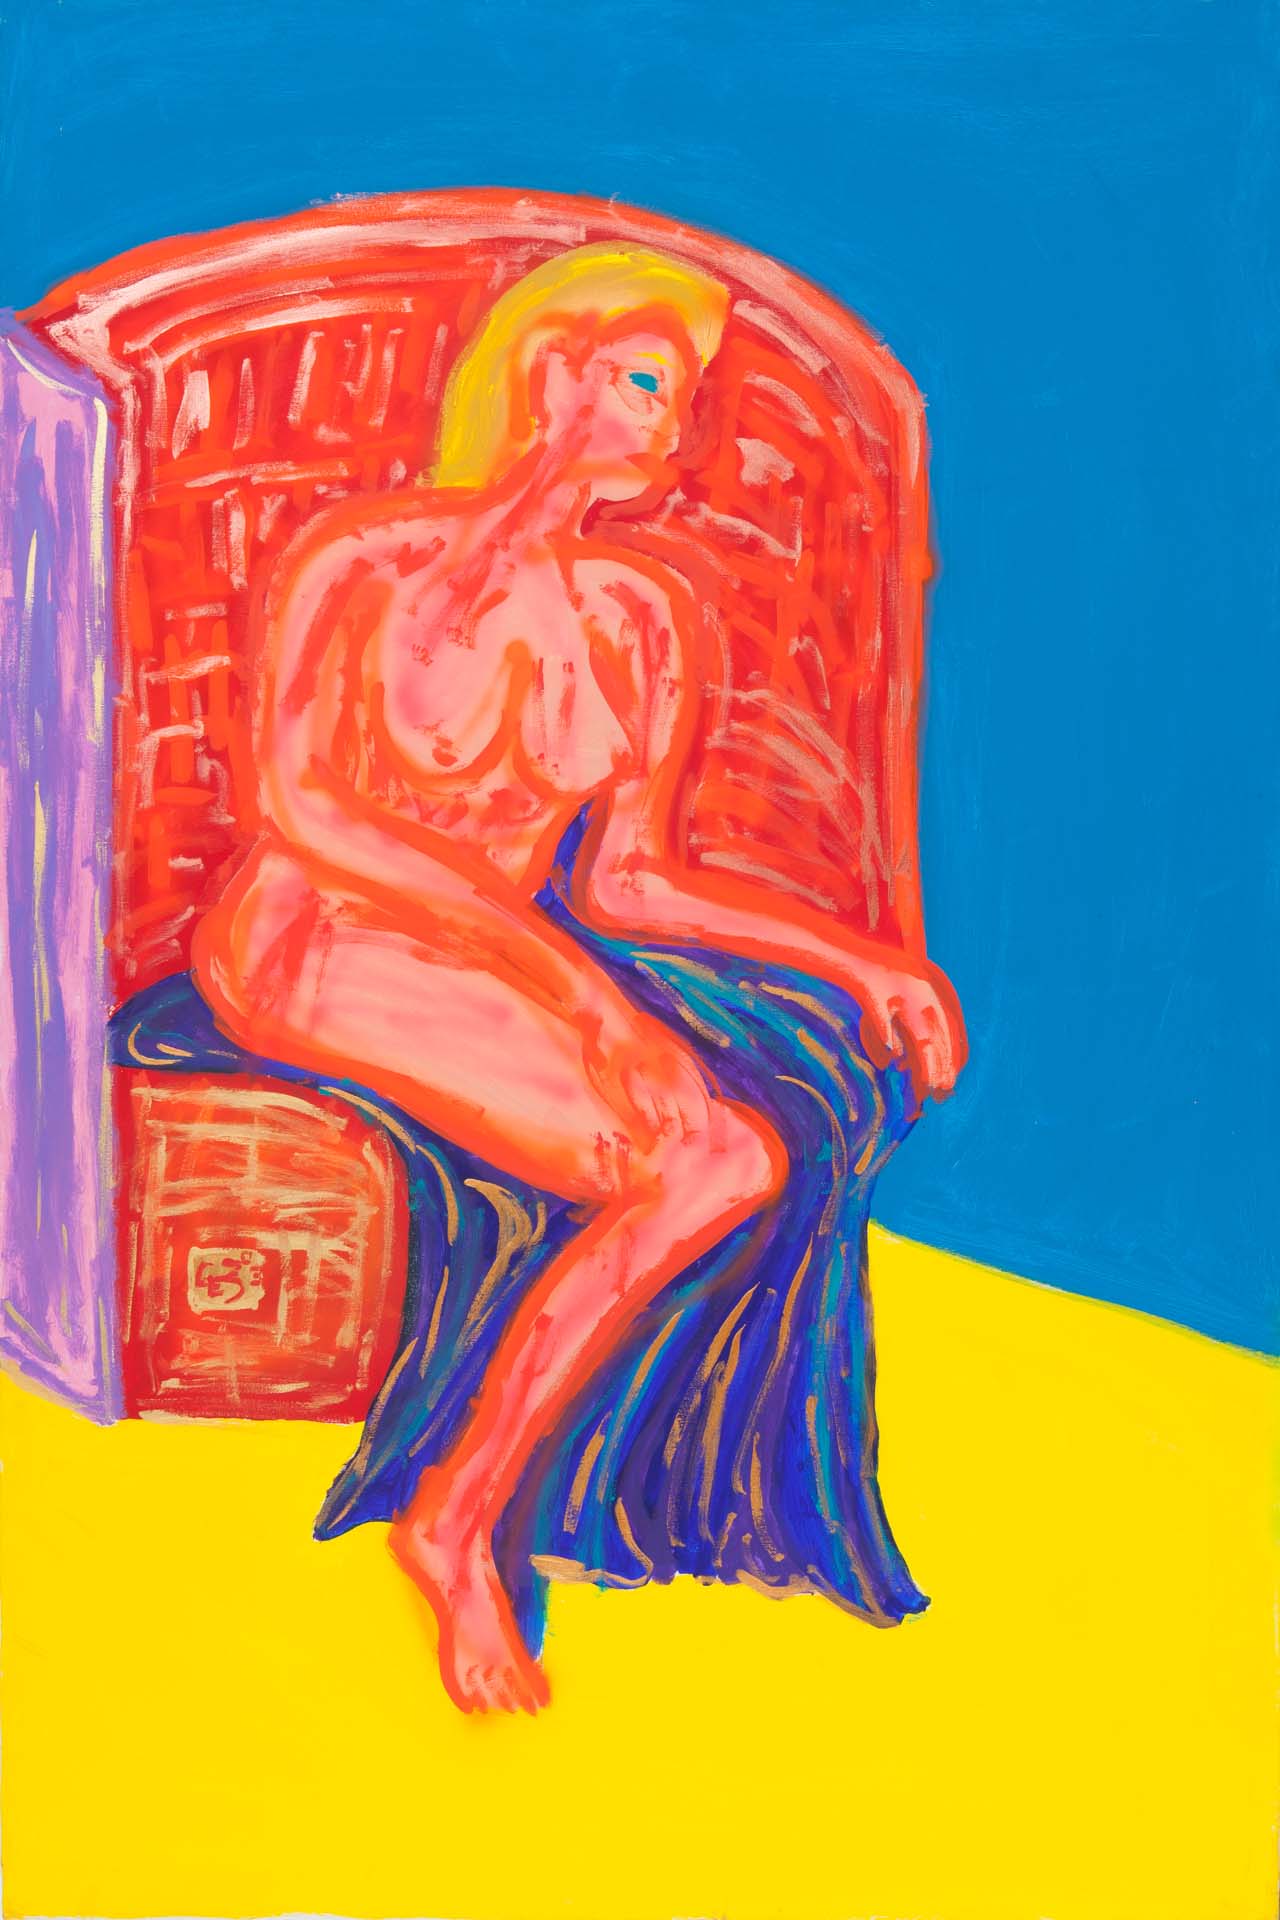 Nude, as Francis Bacon